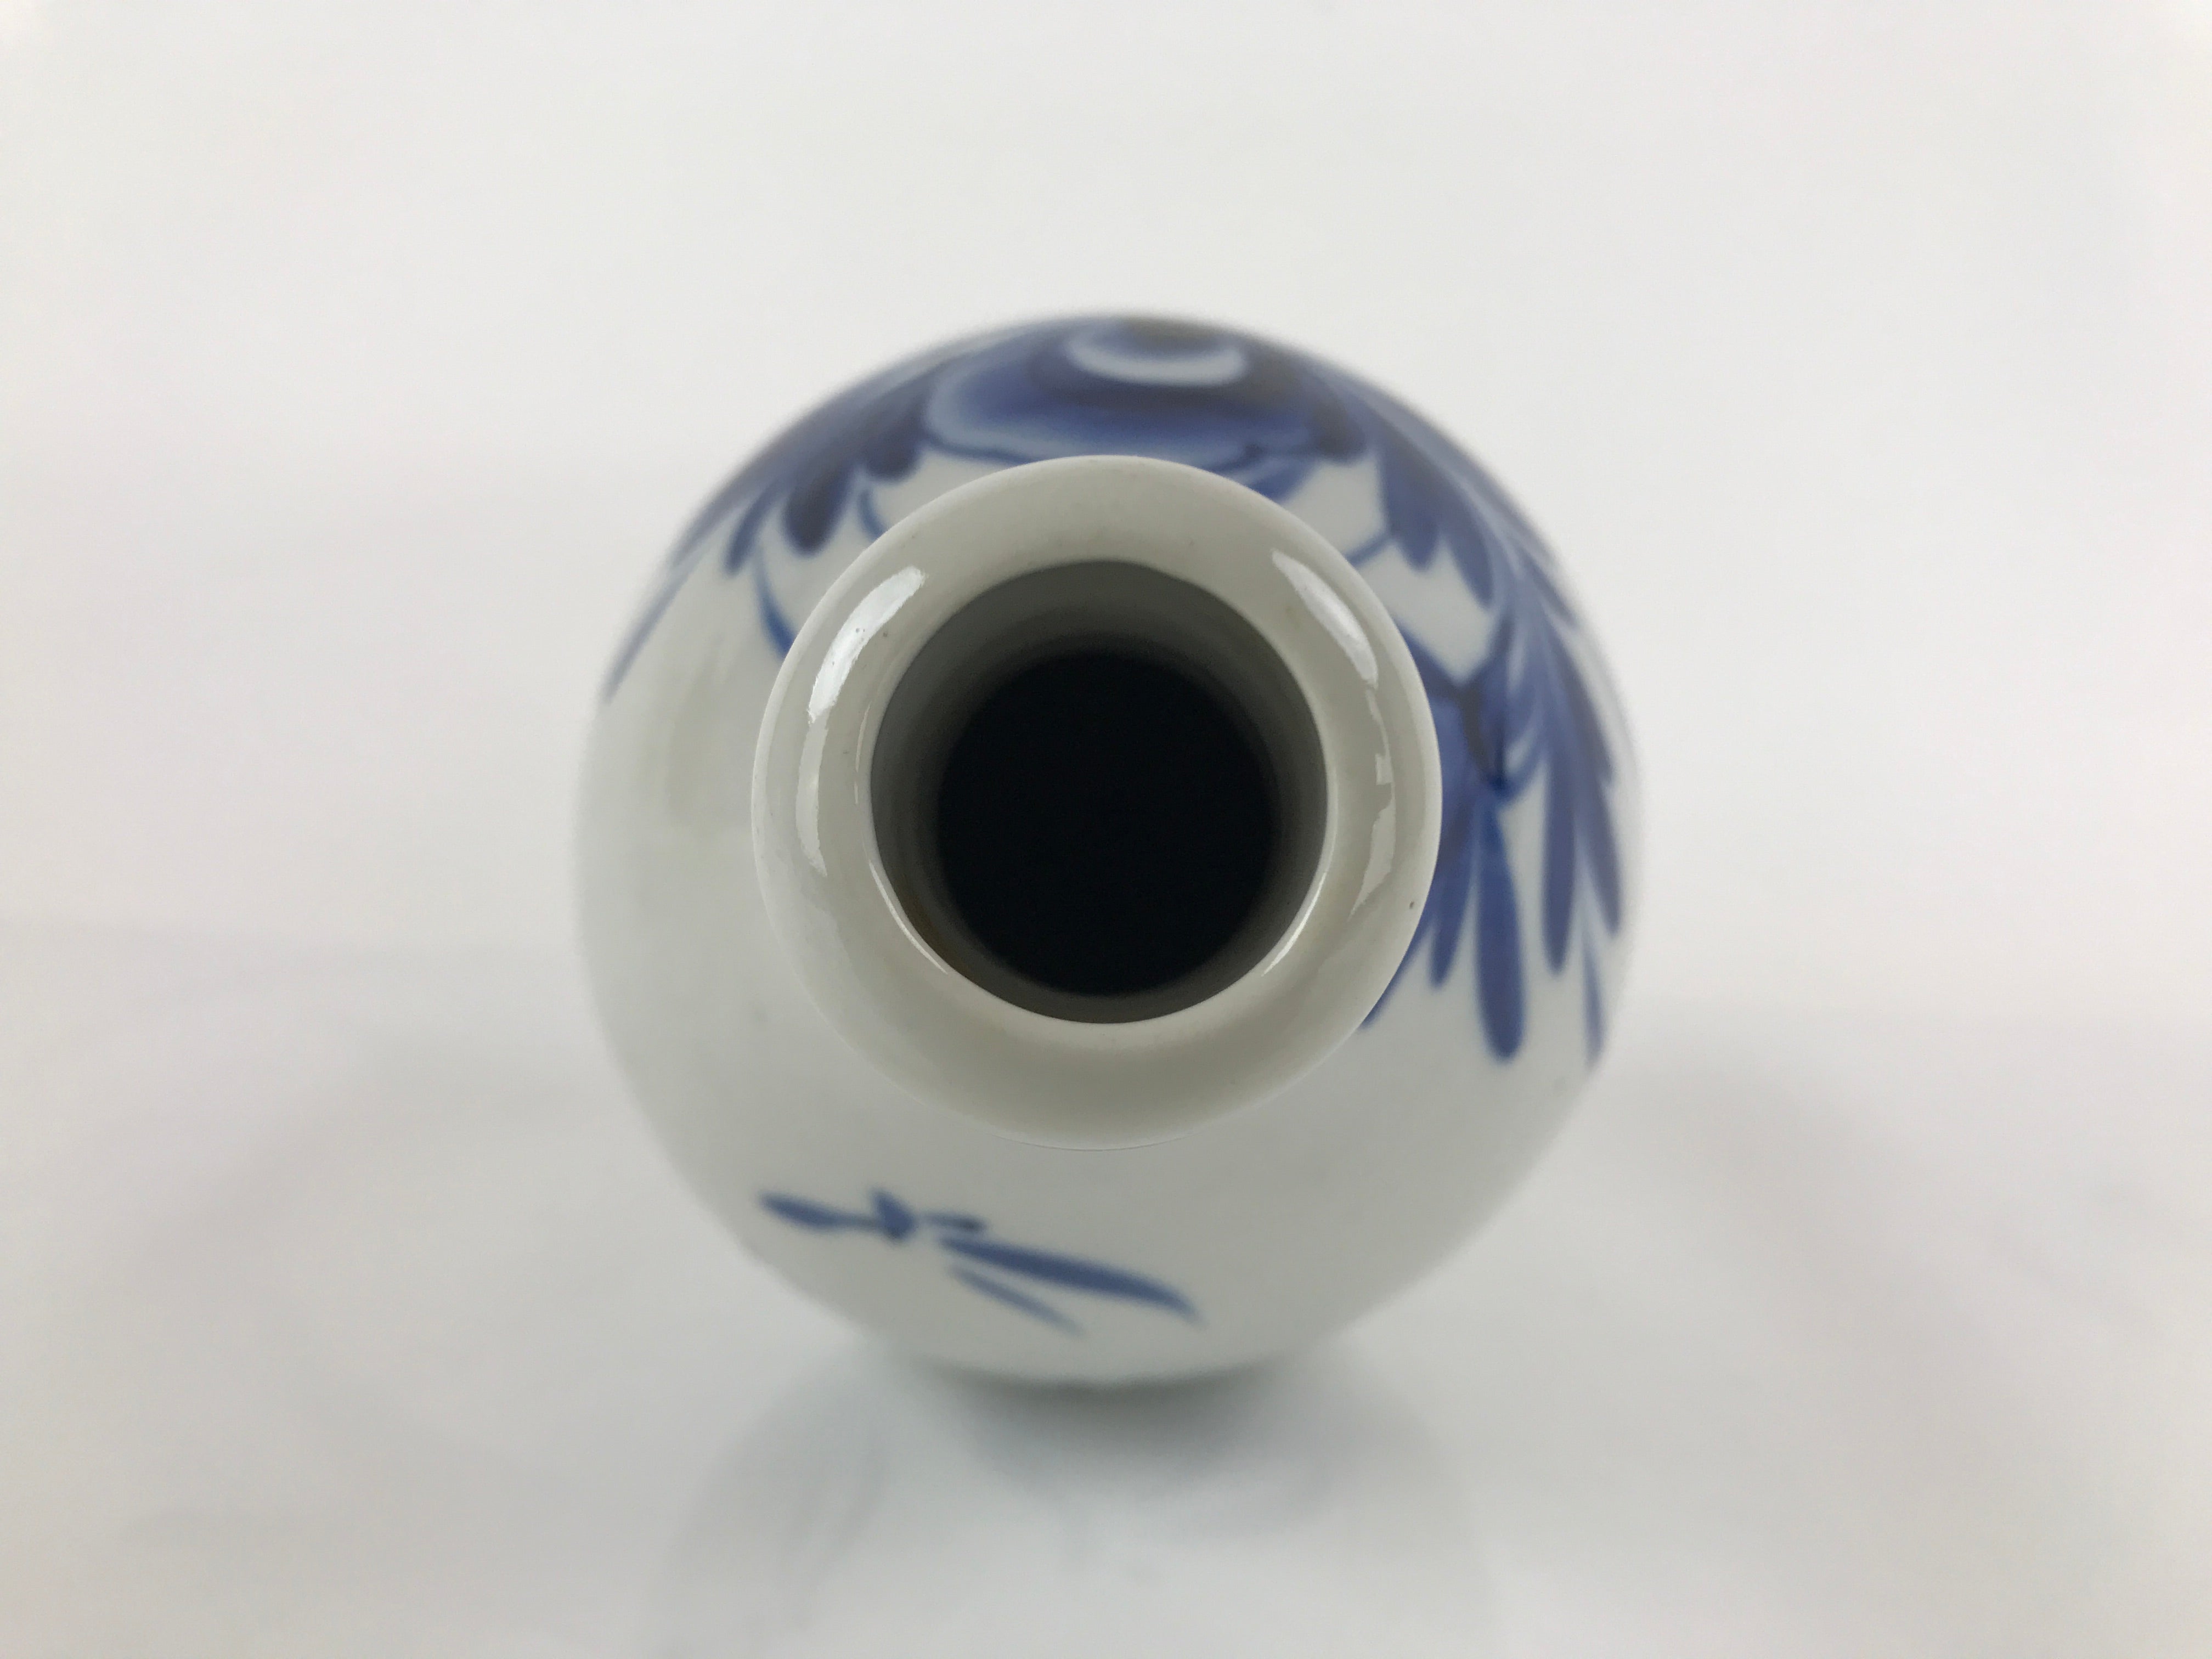 Japanese Ceramic Imari Sake Bottle Kayoi-Tokkuri Vtg Blue Peony Botan TS626